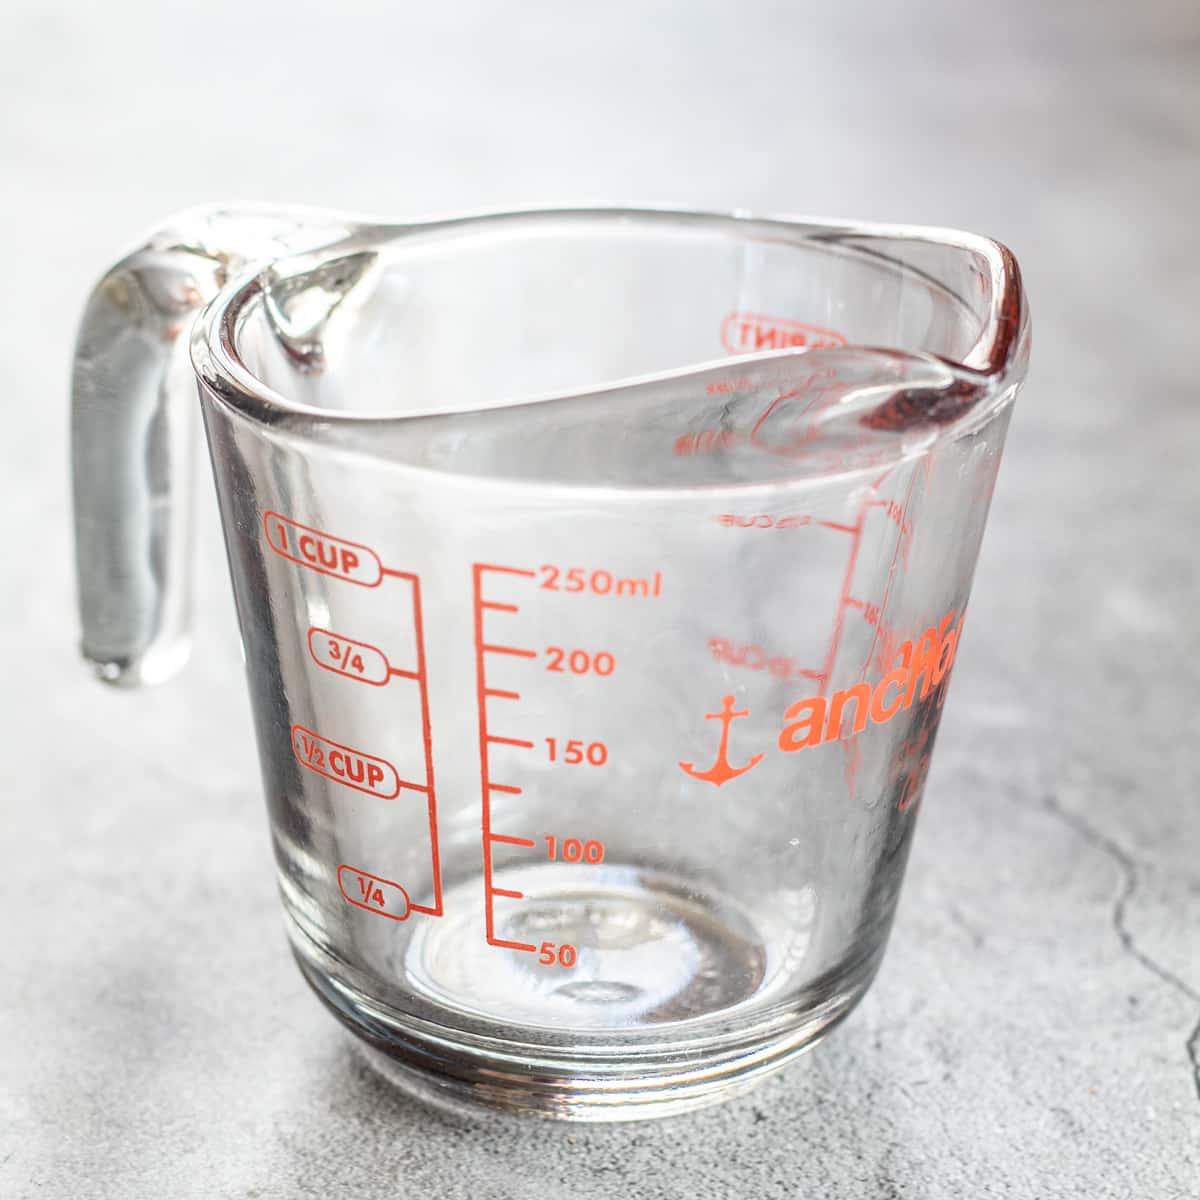 Колко милилитра ml в чаша с мерителна чашка за течност от пирексово стъкло върху светла повърхност.